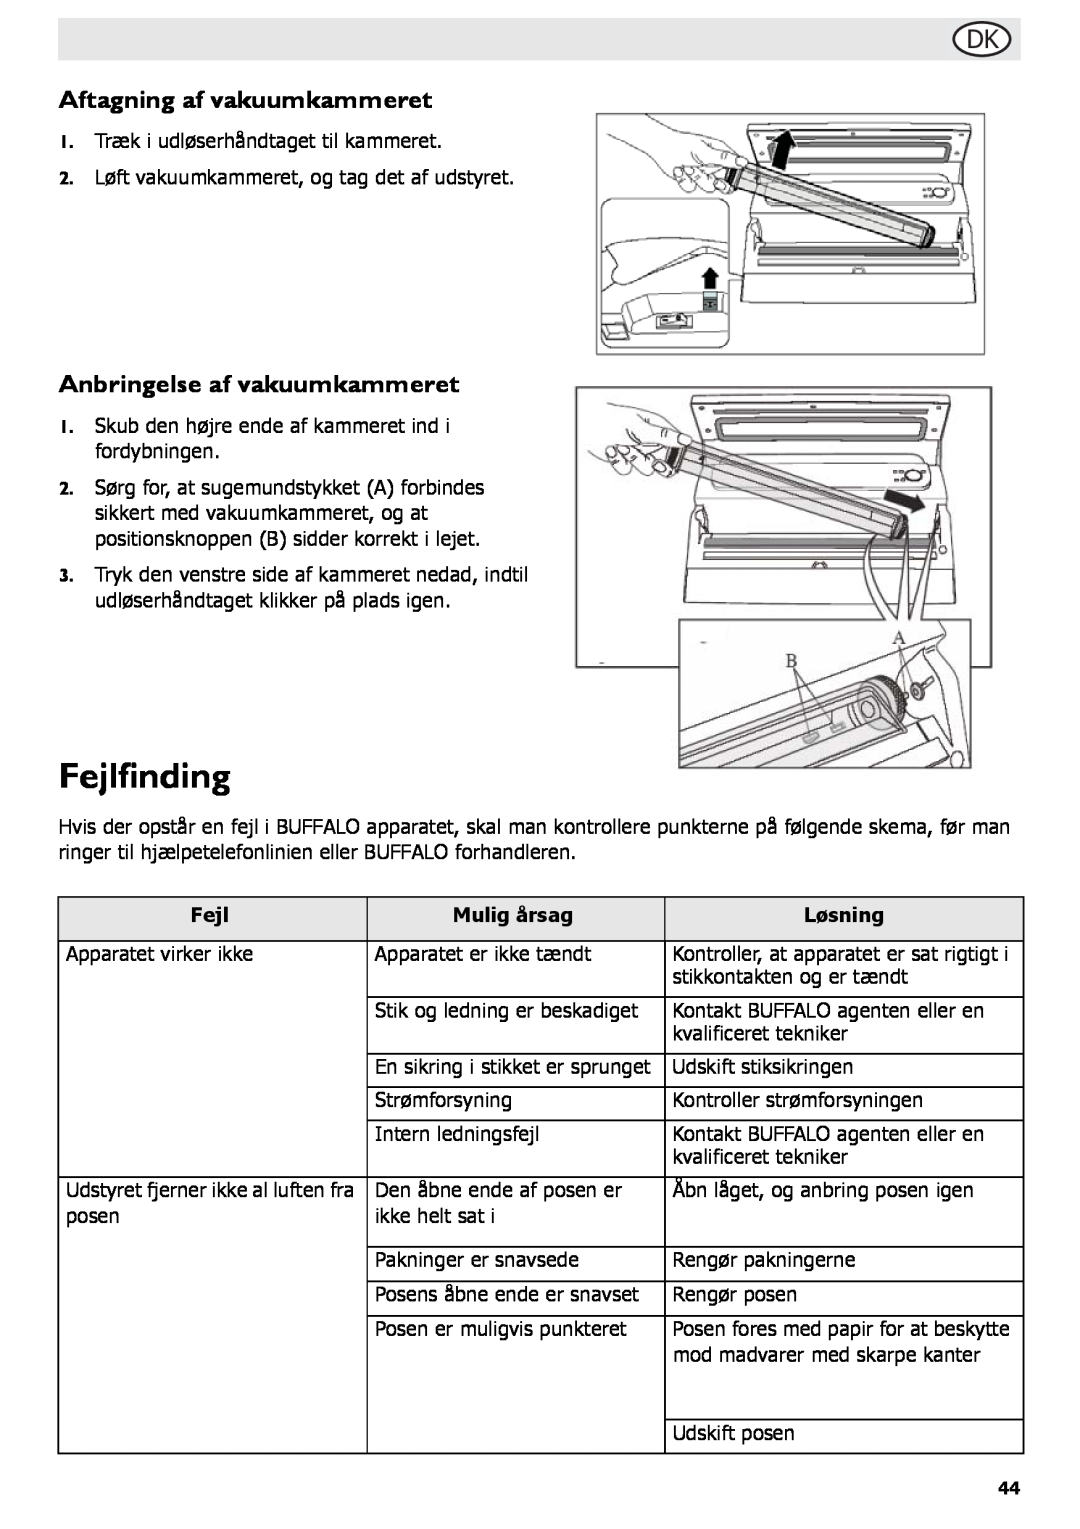 Buffalo Tools S097 instruction manual Fejlfinding, Aftagning af vakuumkammeret, Anbringelse af vakuumkammeret 